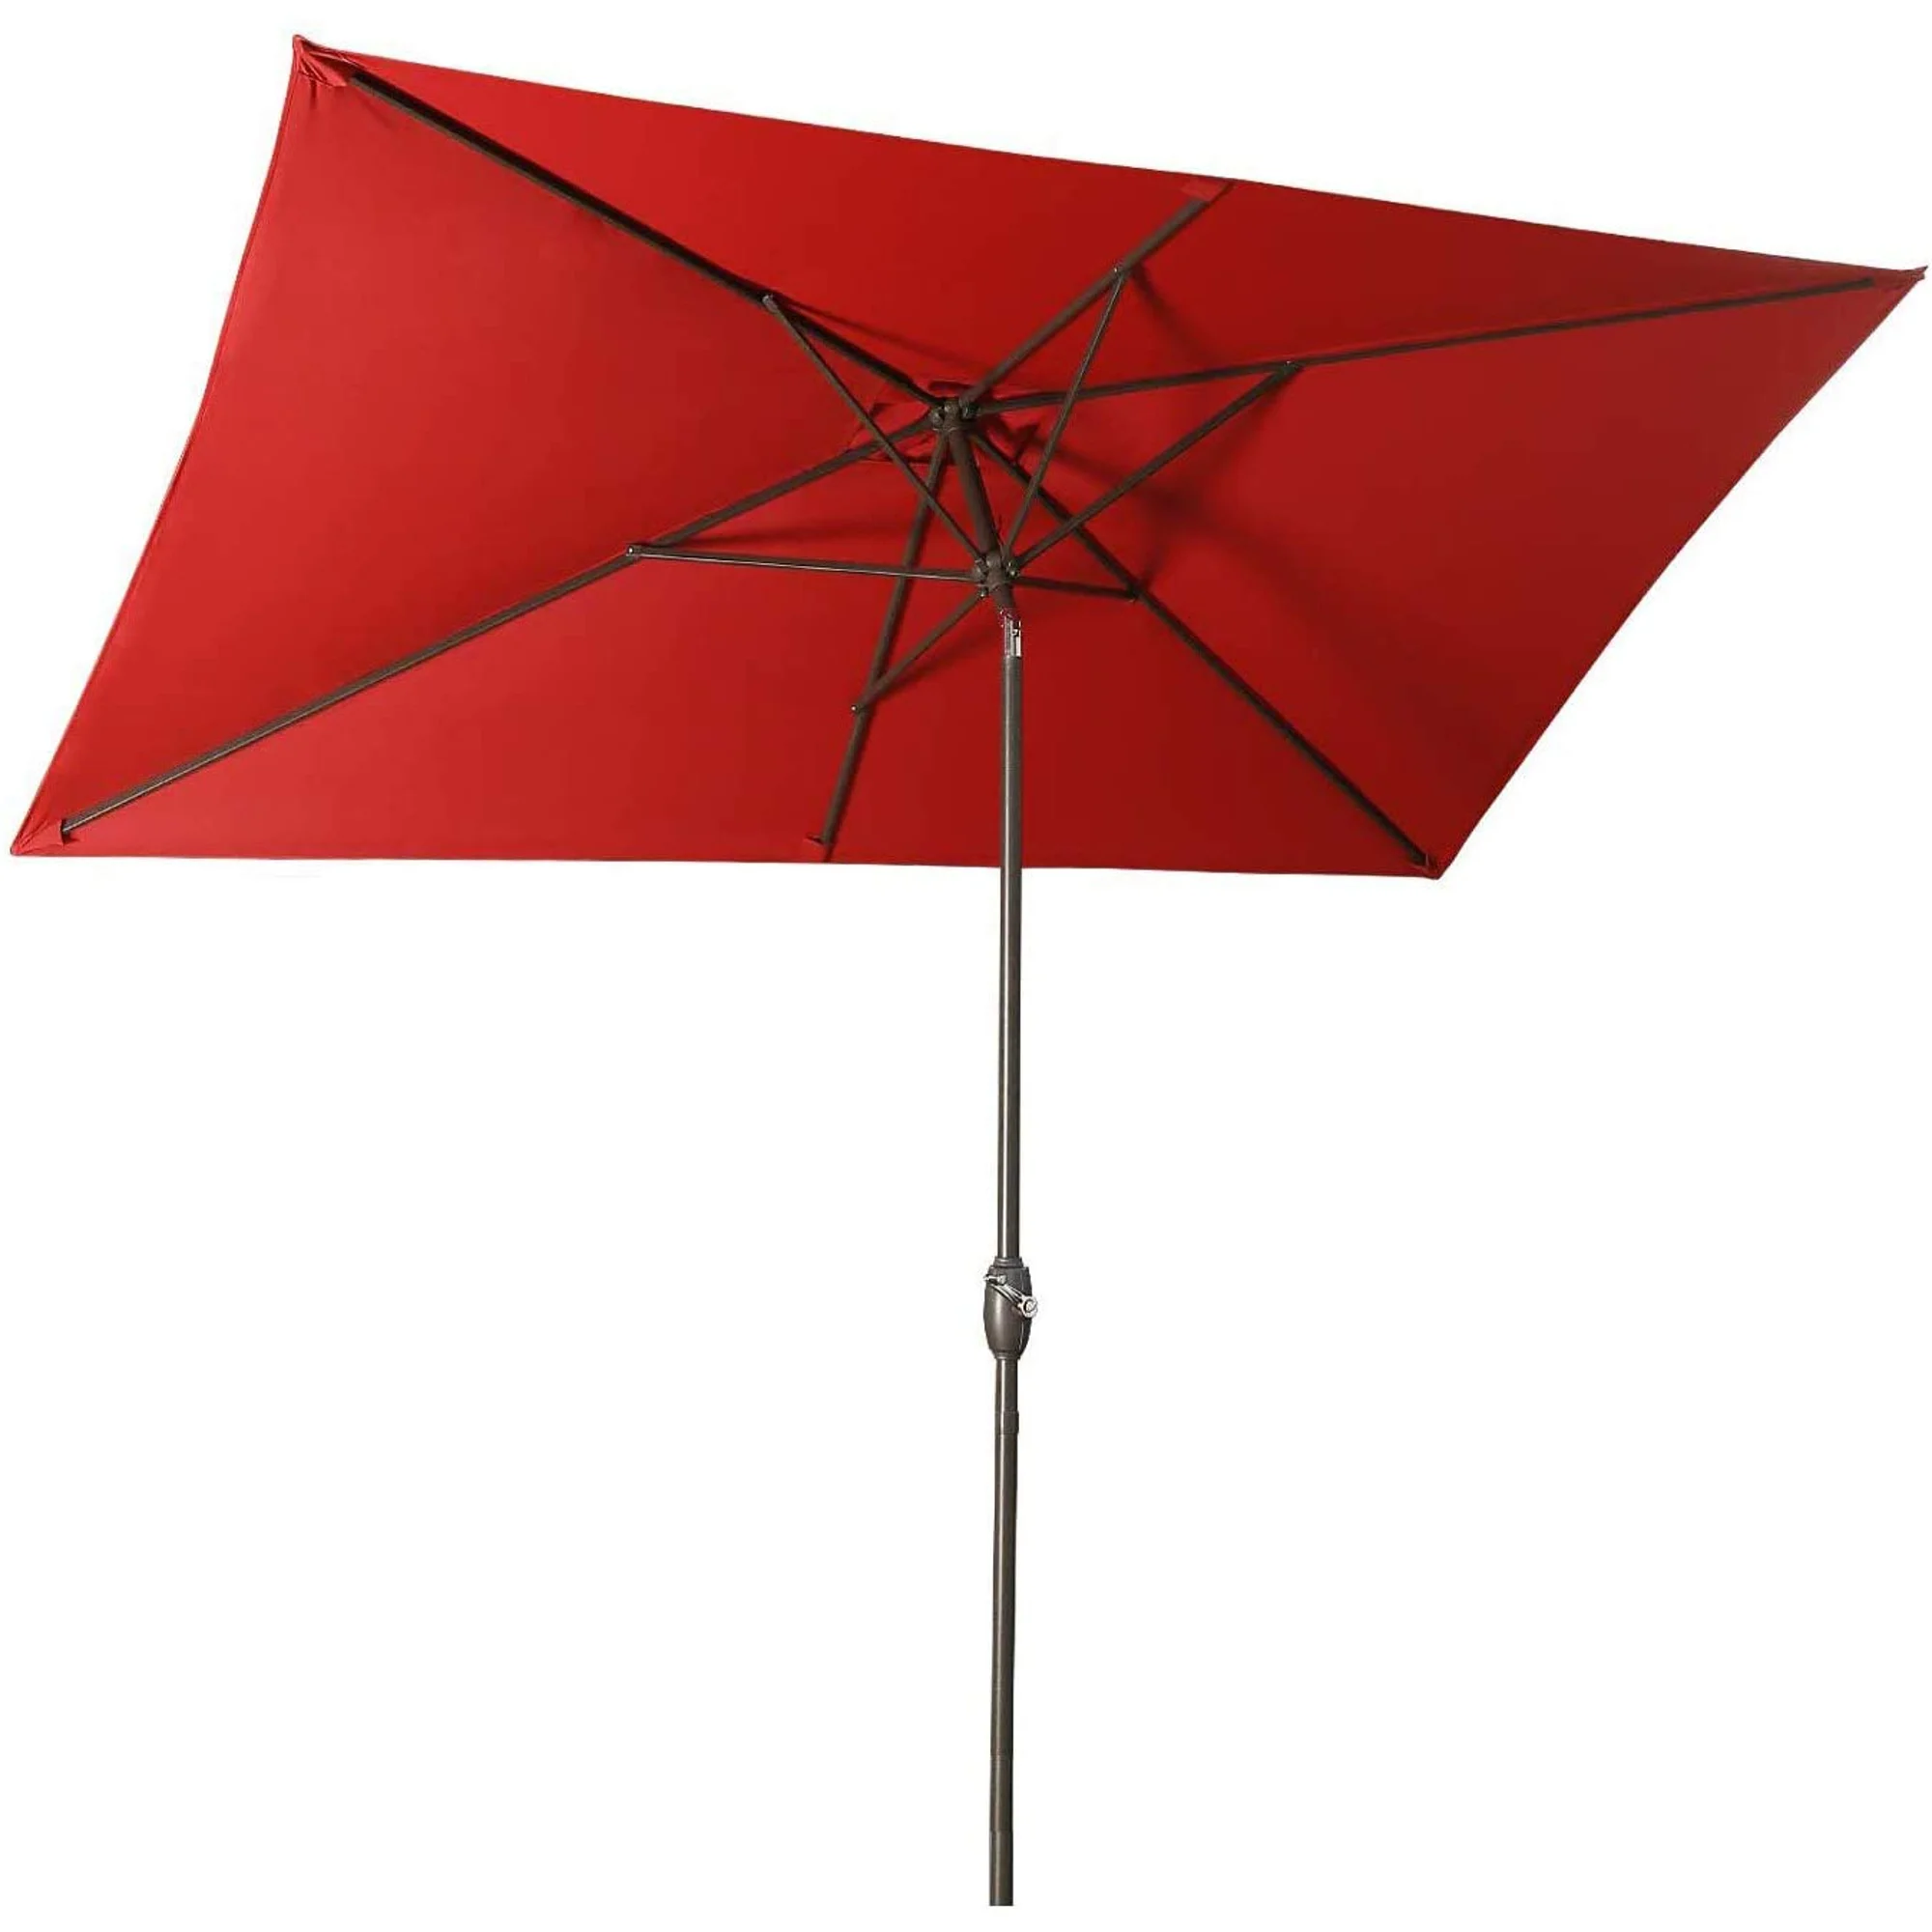 

Прямоугольный зонт для патио 6,5 футов x 10 футов с наклоном, кривошипом и 6 прочными ребрами для палубы, лужайки, бассейна в красном цвете